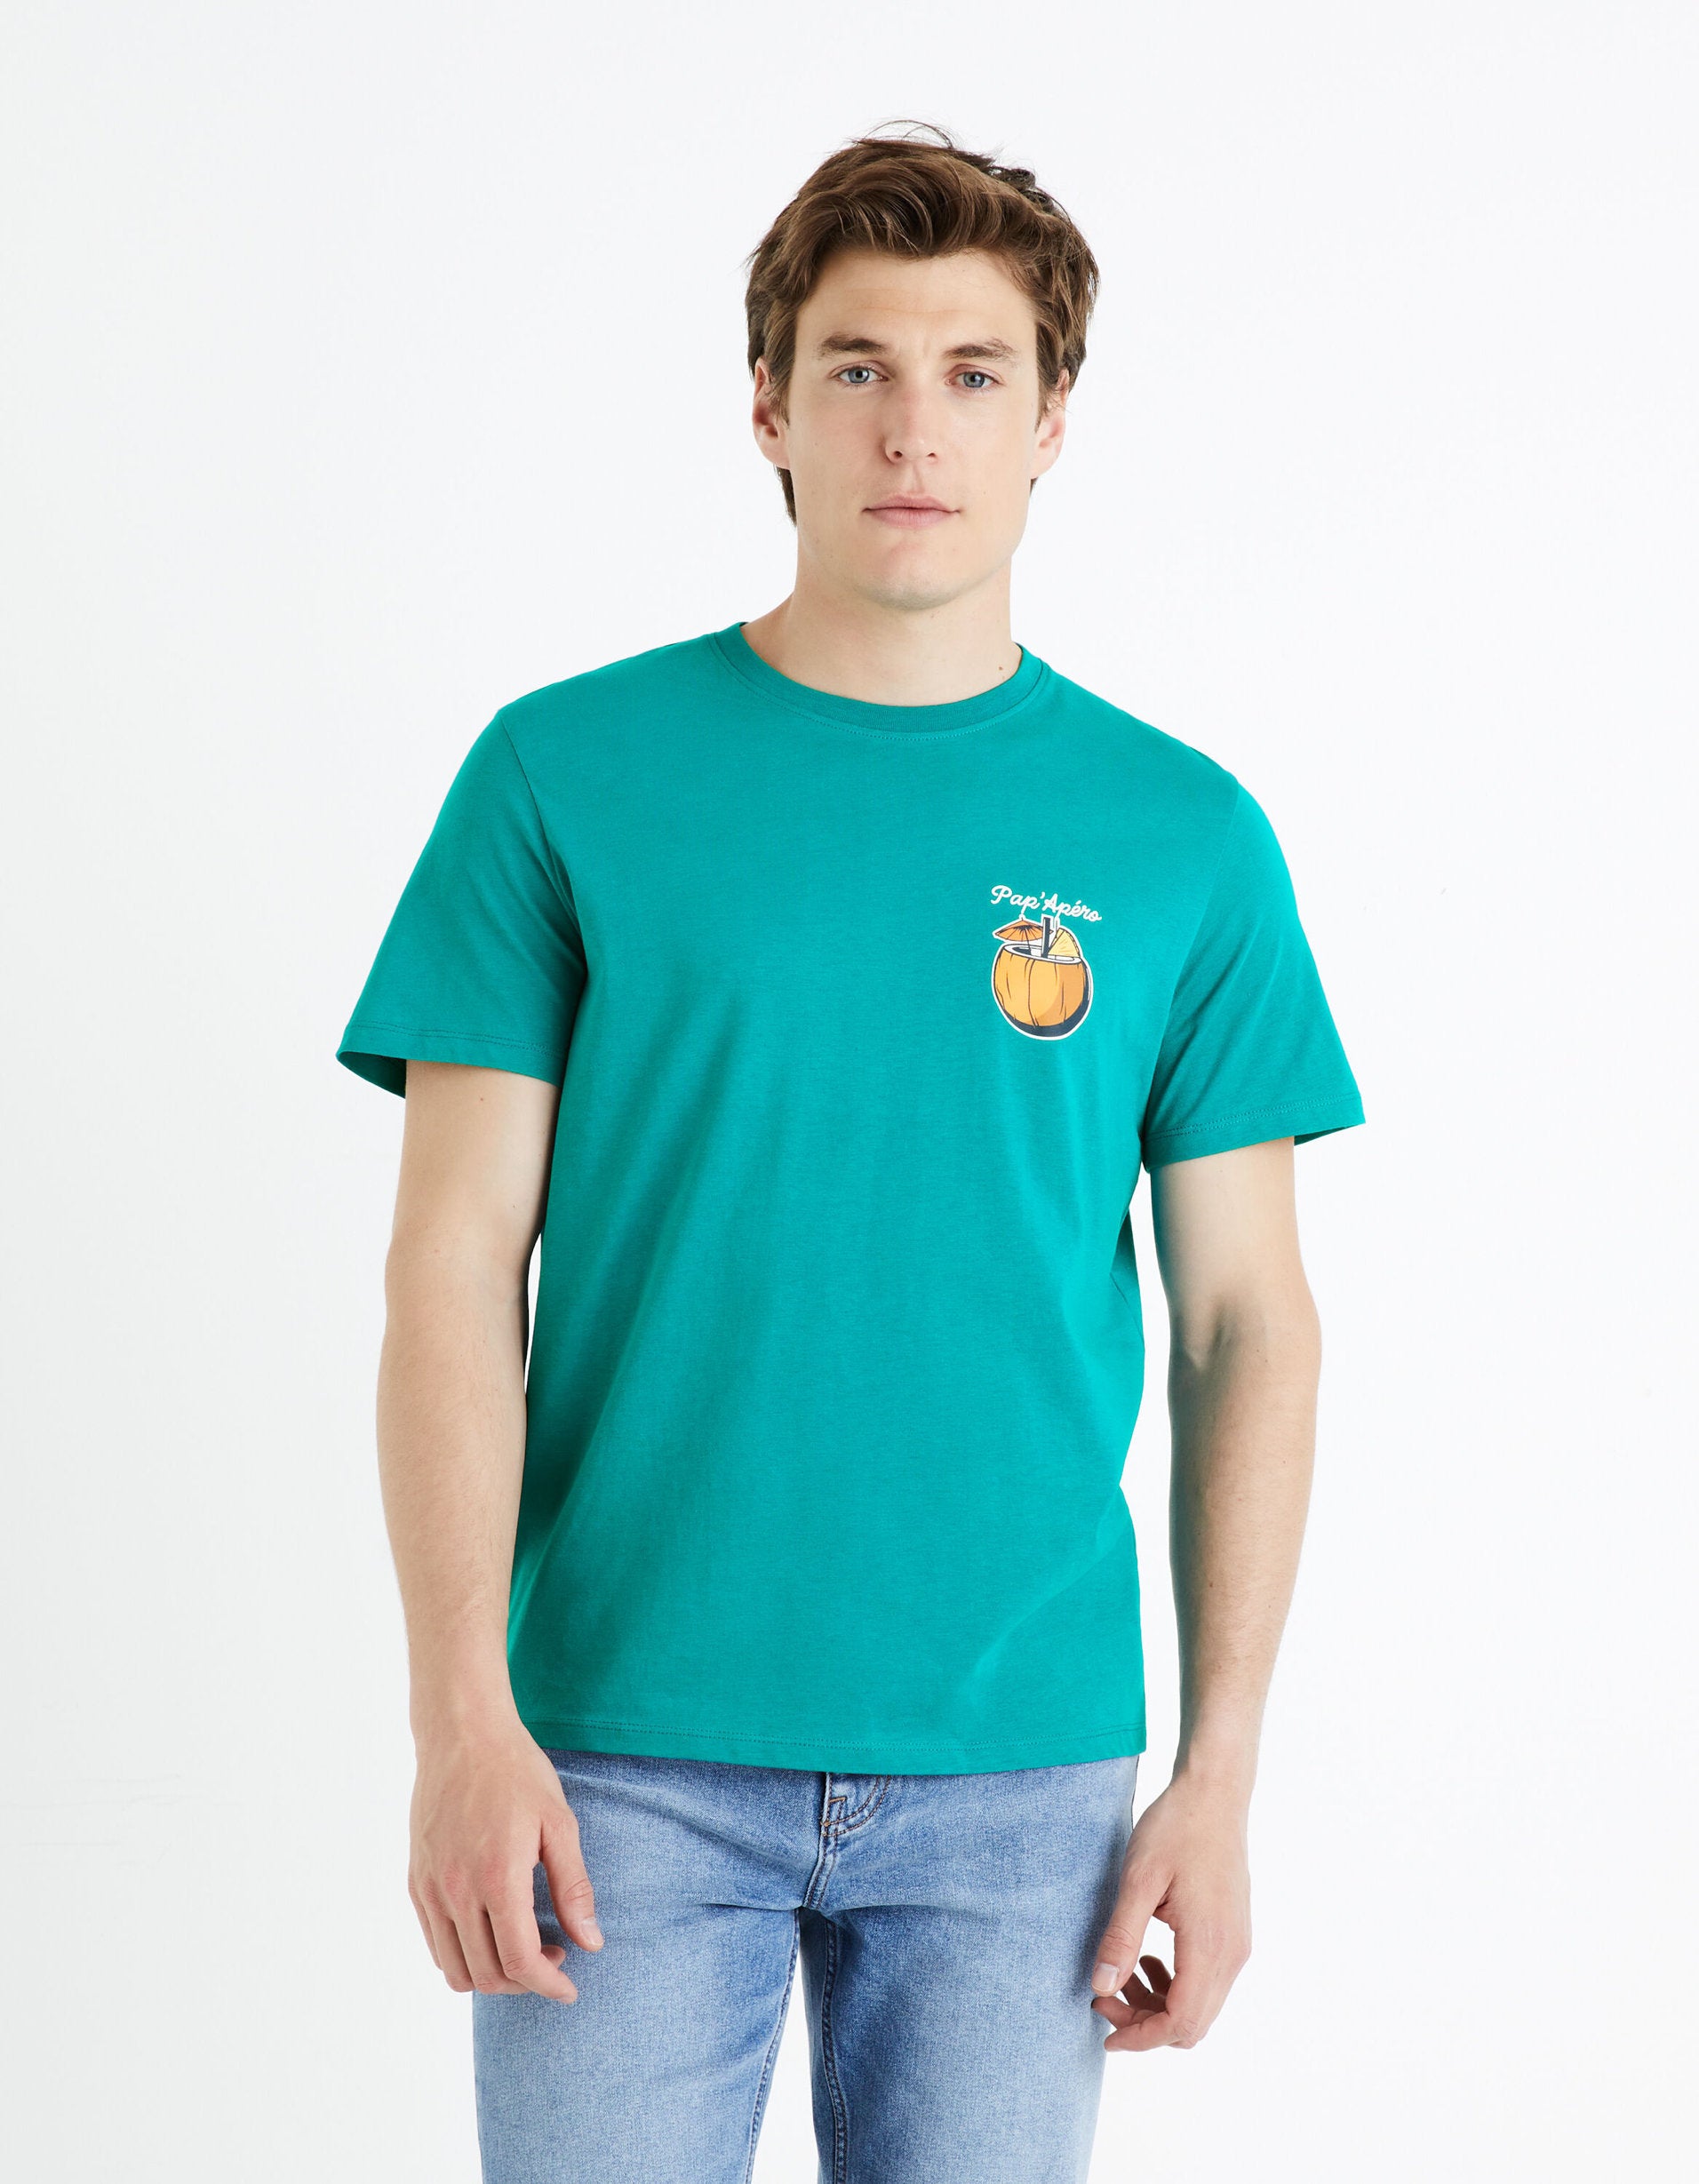 100% Cotton Round Neck T-Shirt - Green_FEDARON_GREEN BRITISH_01